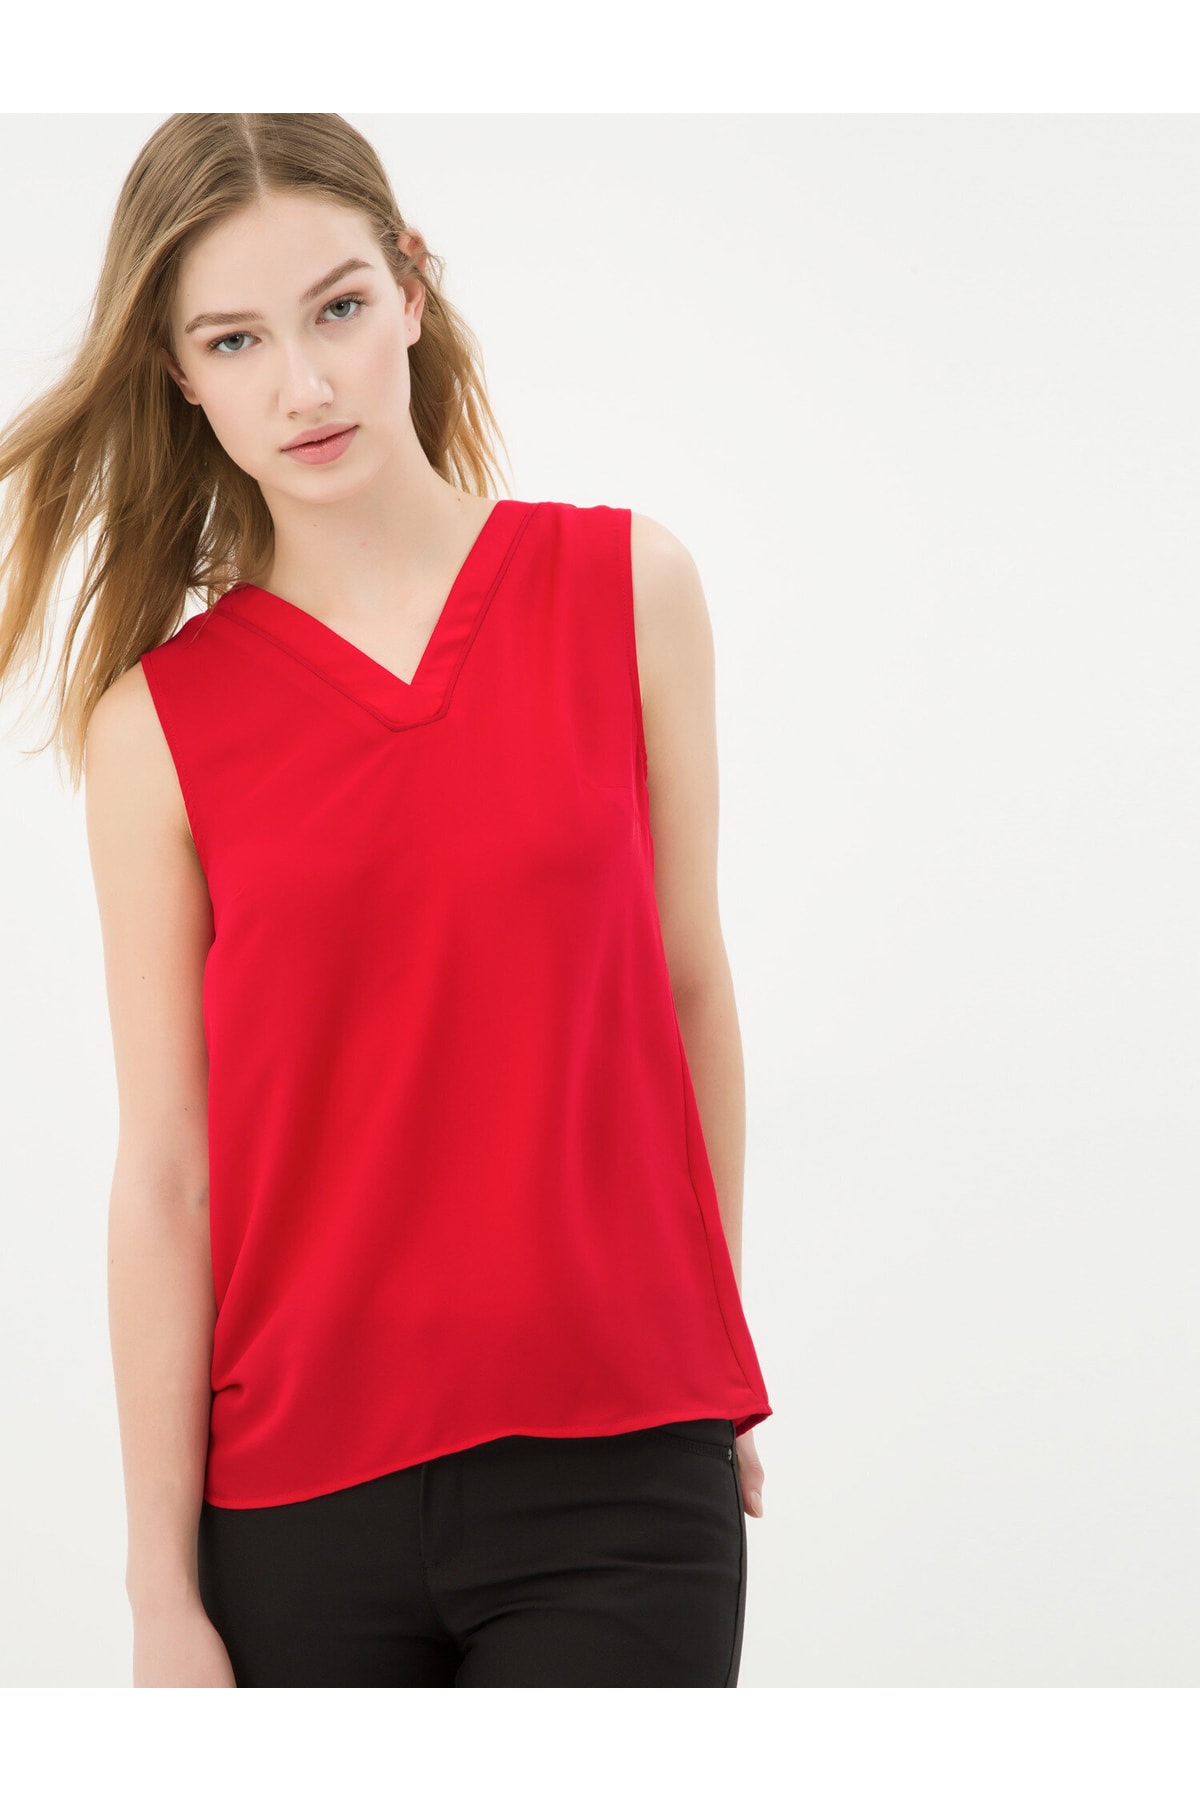 цена Женская красная блузка Koton, красный